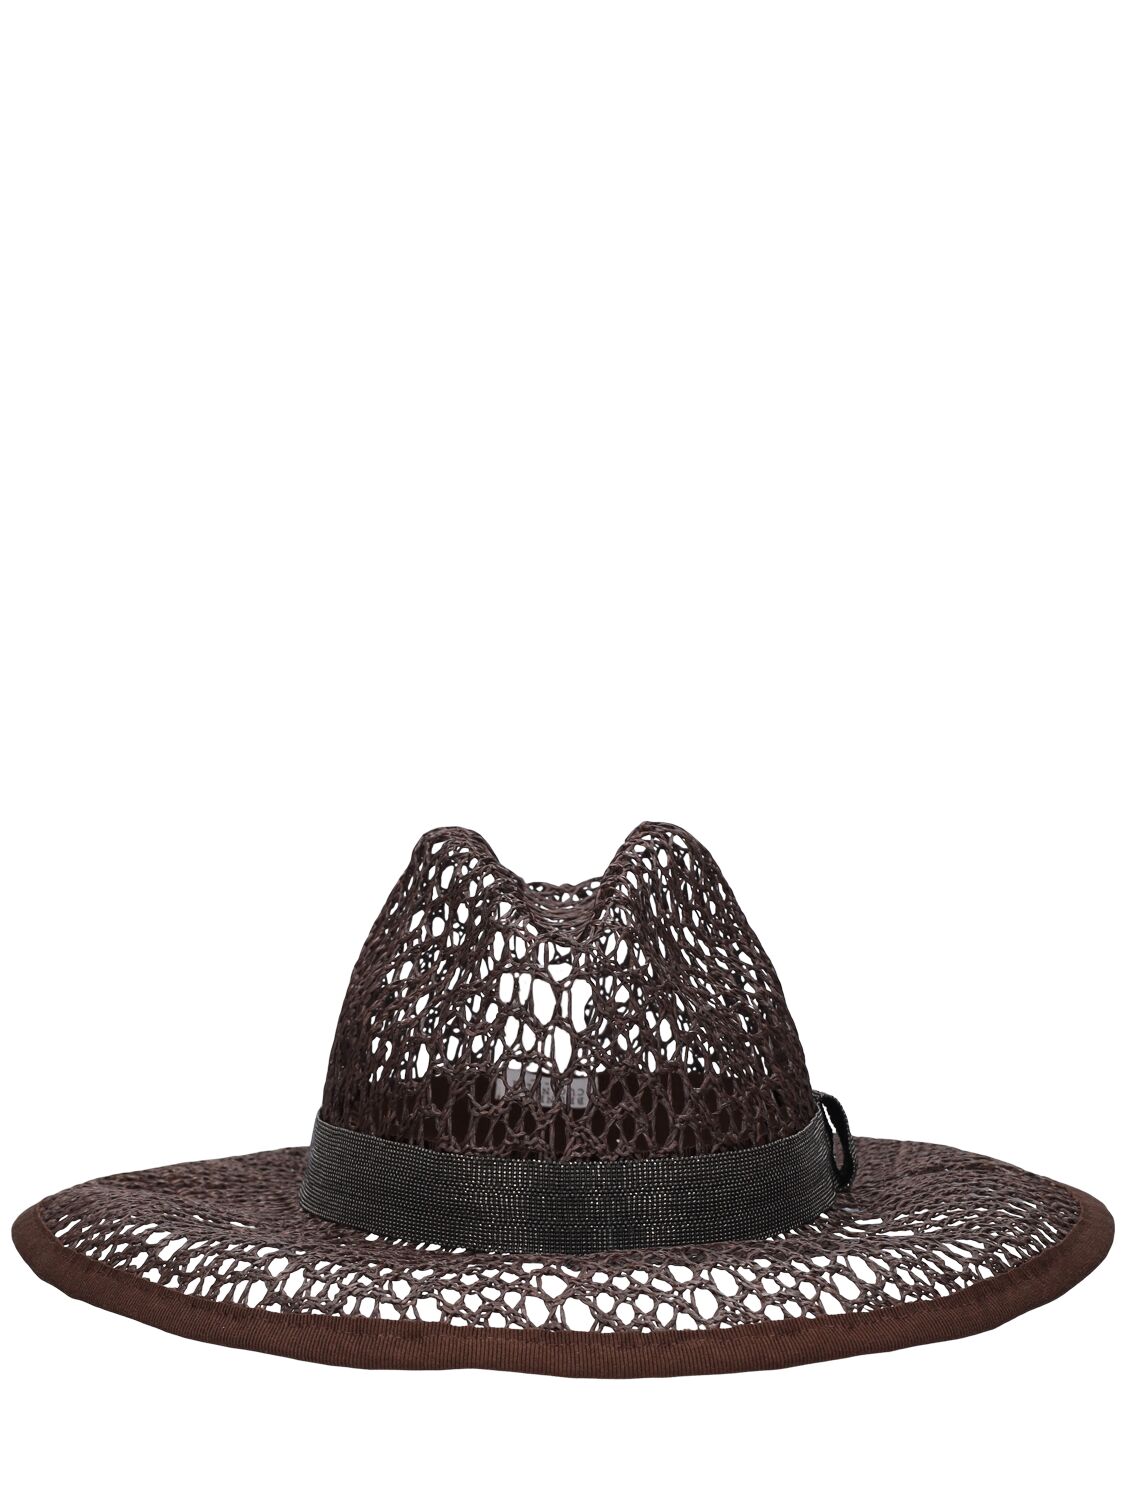 Brunello Cucinelli Raffia Effect Brimmed Hat In Dark Brown